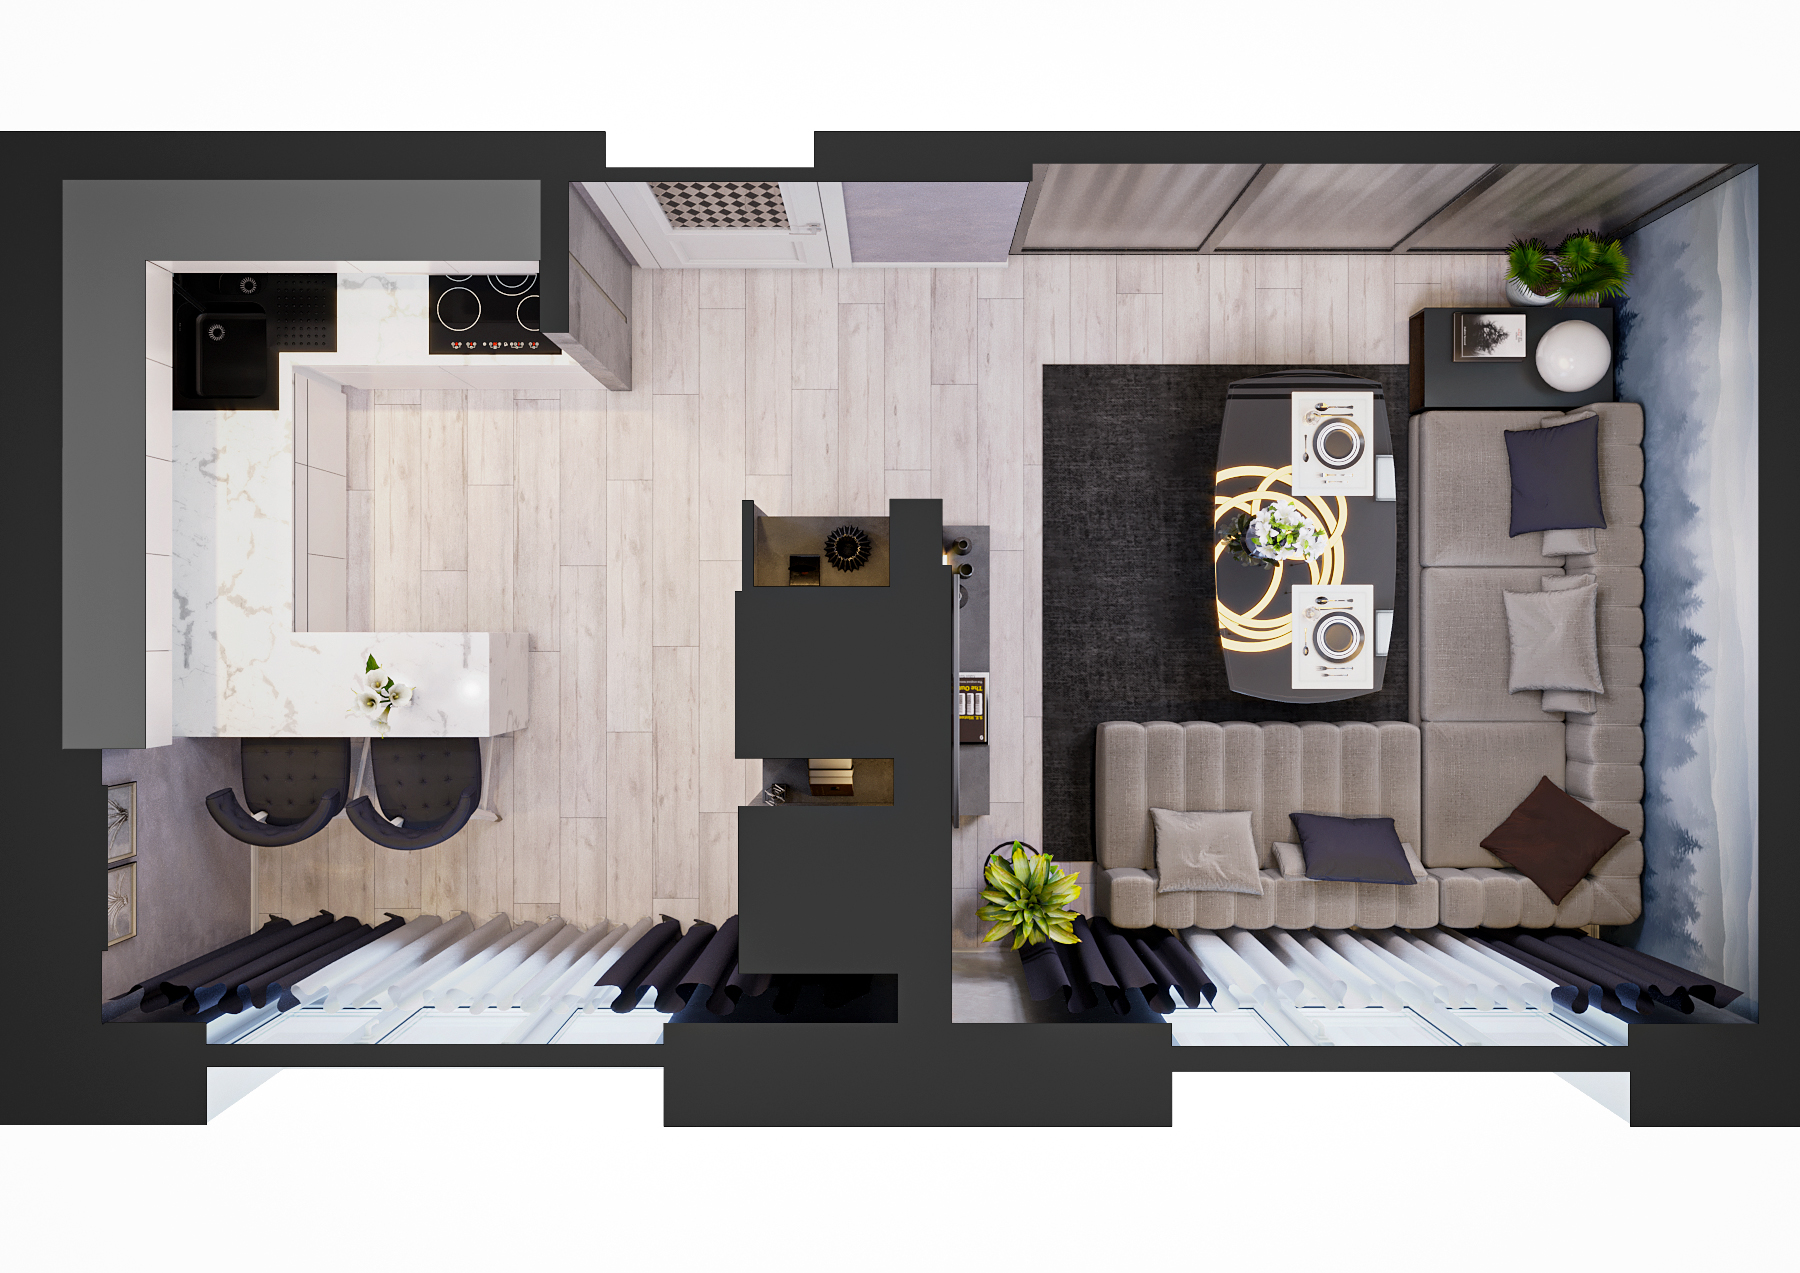 Cuisine salle à manger dans 3d max corona render image